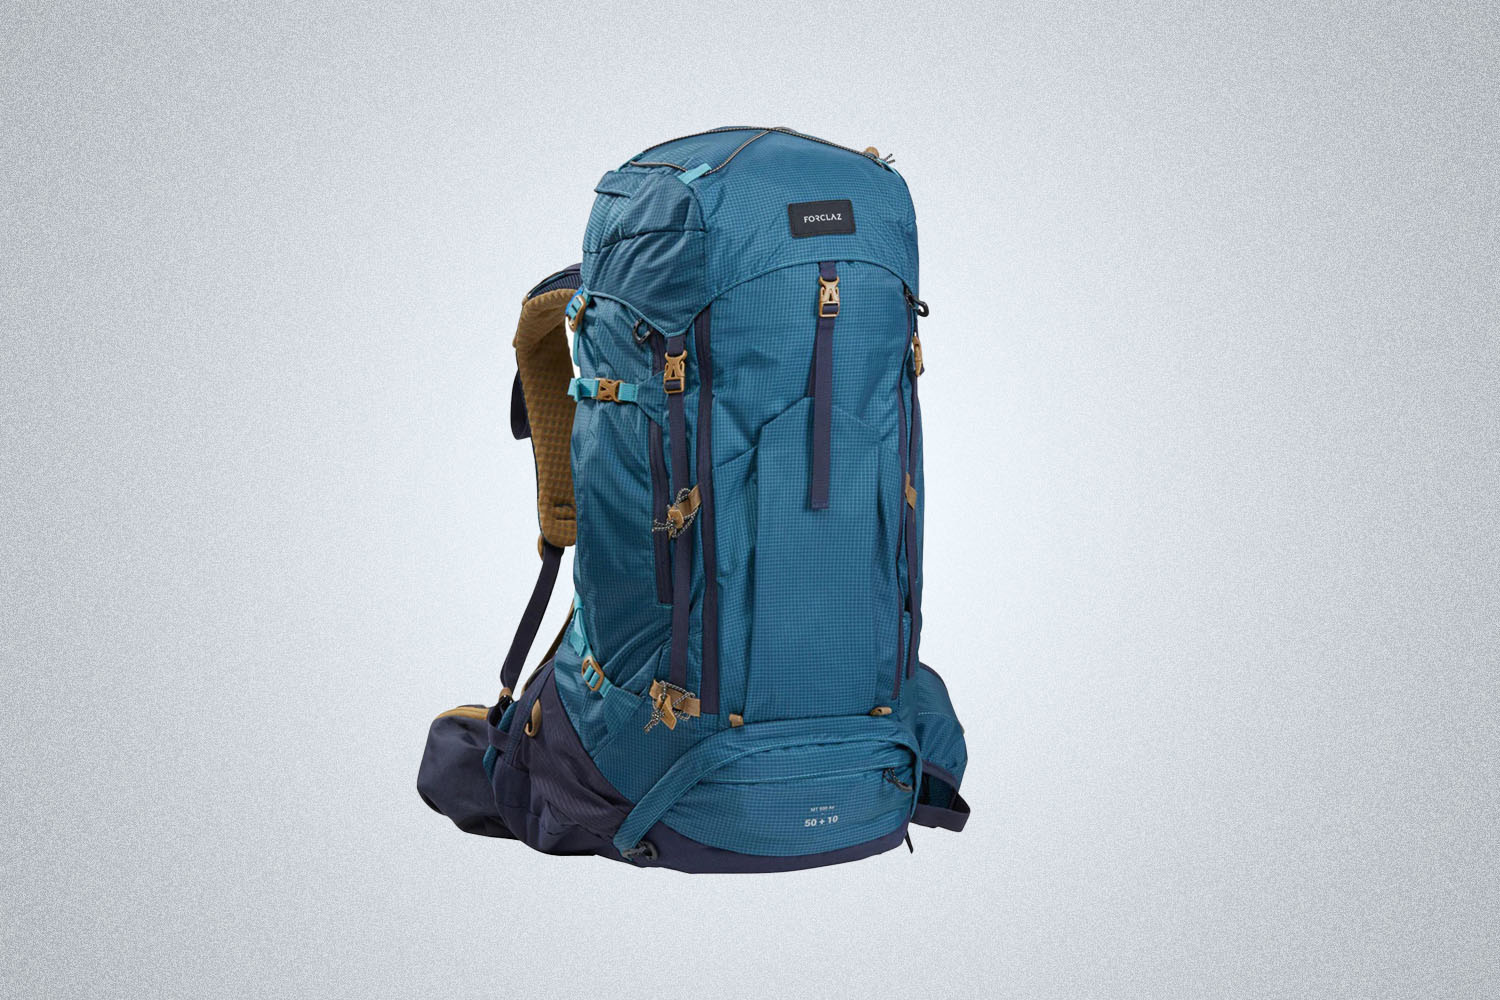 Decathlon - Quechua NH100, 20 L Hiking Backpack, Adult - Walmart.com